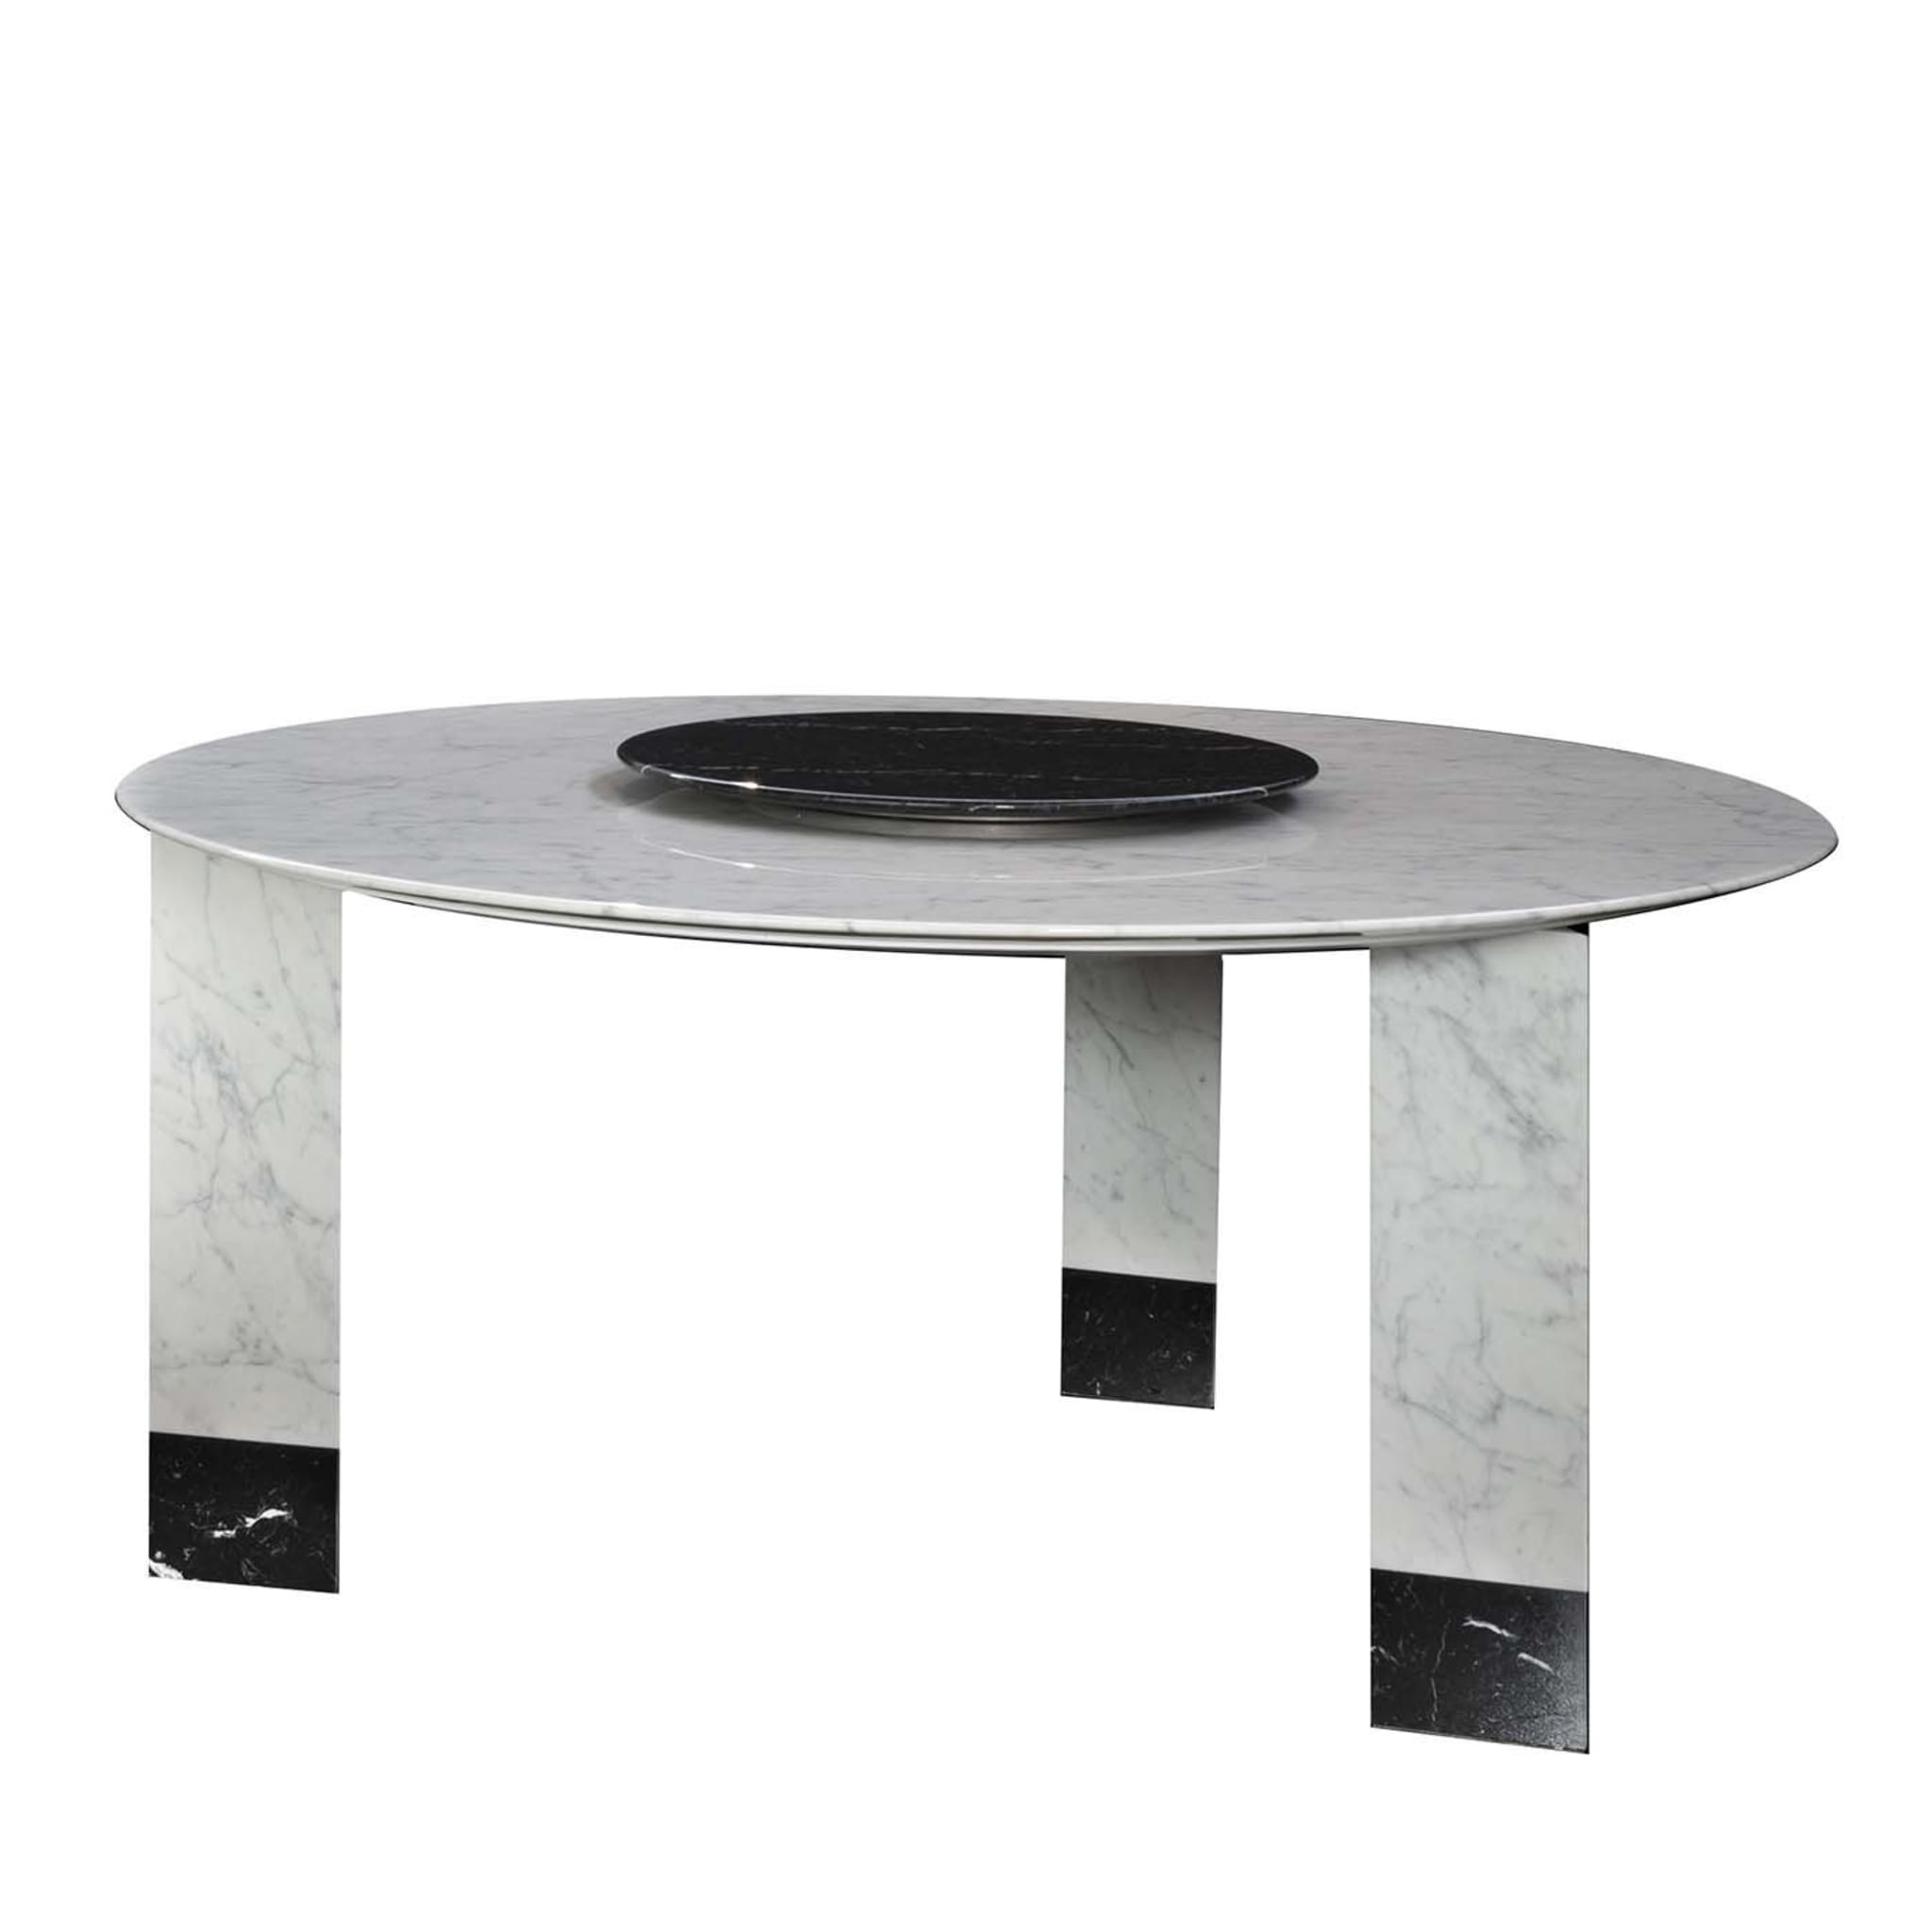 Alba Table in White Carrara Marble by Giorgio Soressi - Main view